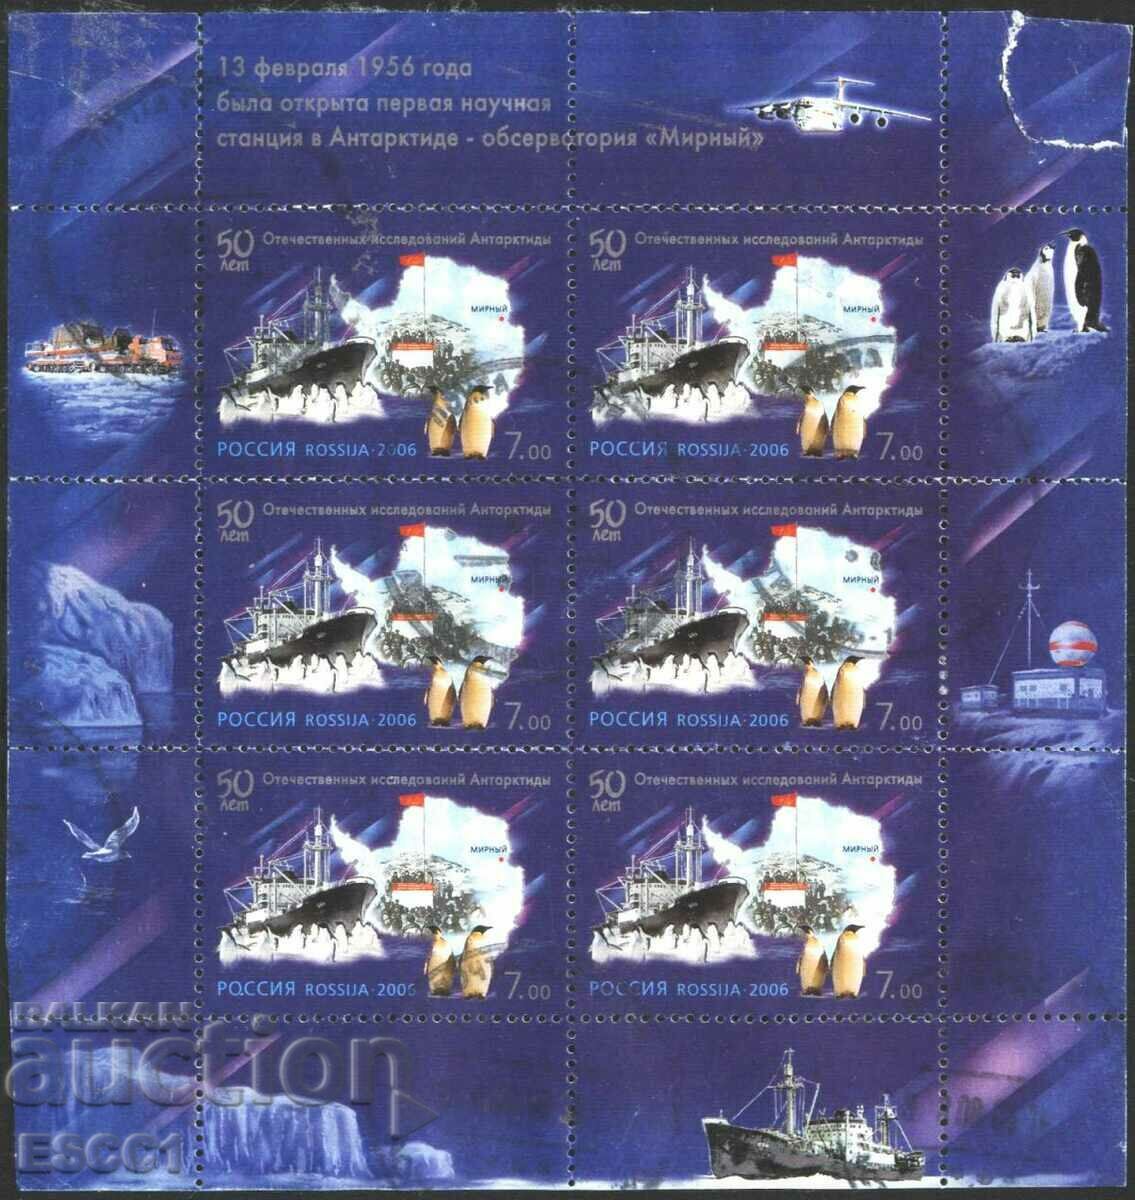 Σφραγισμένο σήμα Antarctica Ship Penguins 2006 από τη Ρωσία